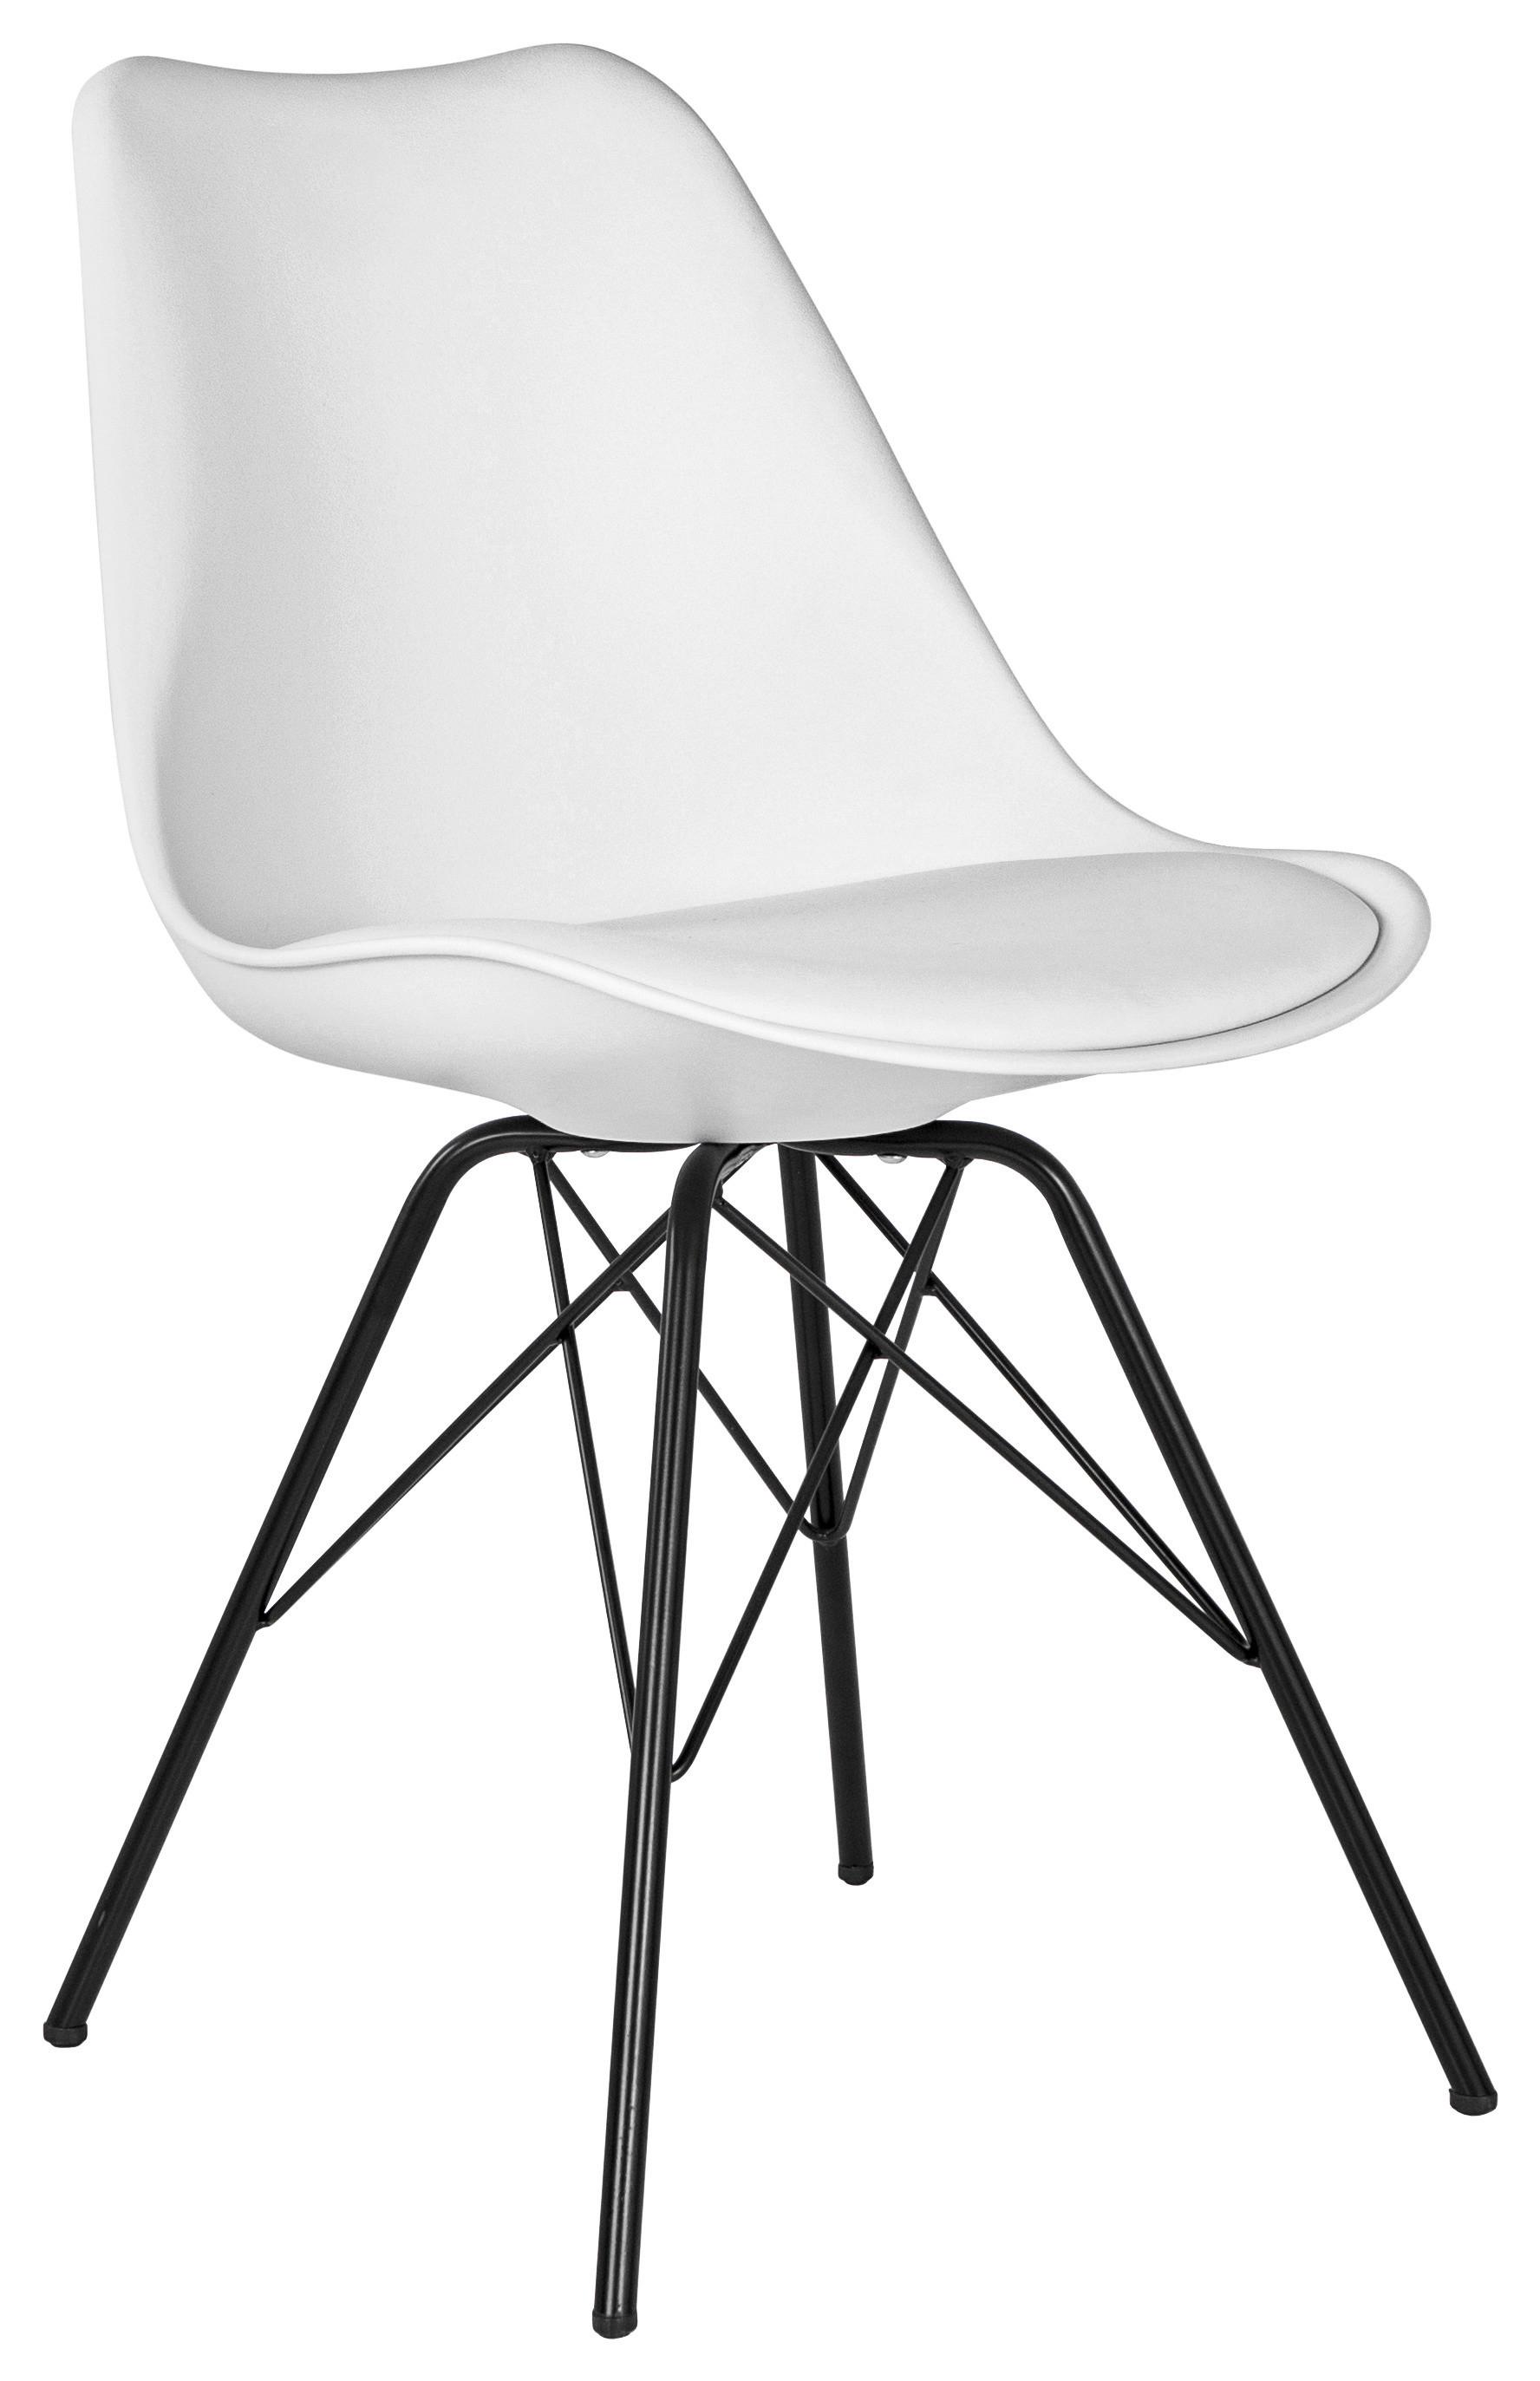 Stuhl in Weiß - Schwarz/Weiß, MODERN, Kunststoff/Textil (55,5/86/48cm) - Modern Living